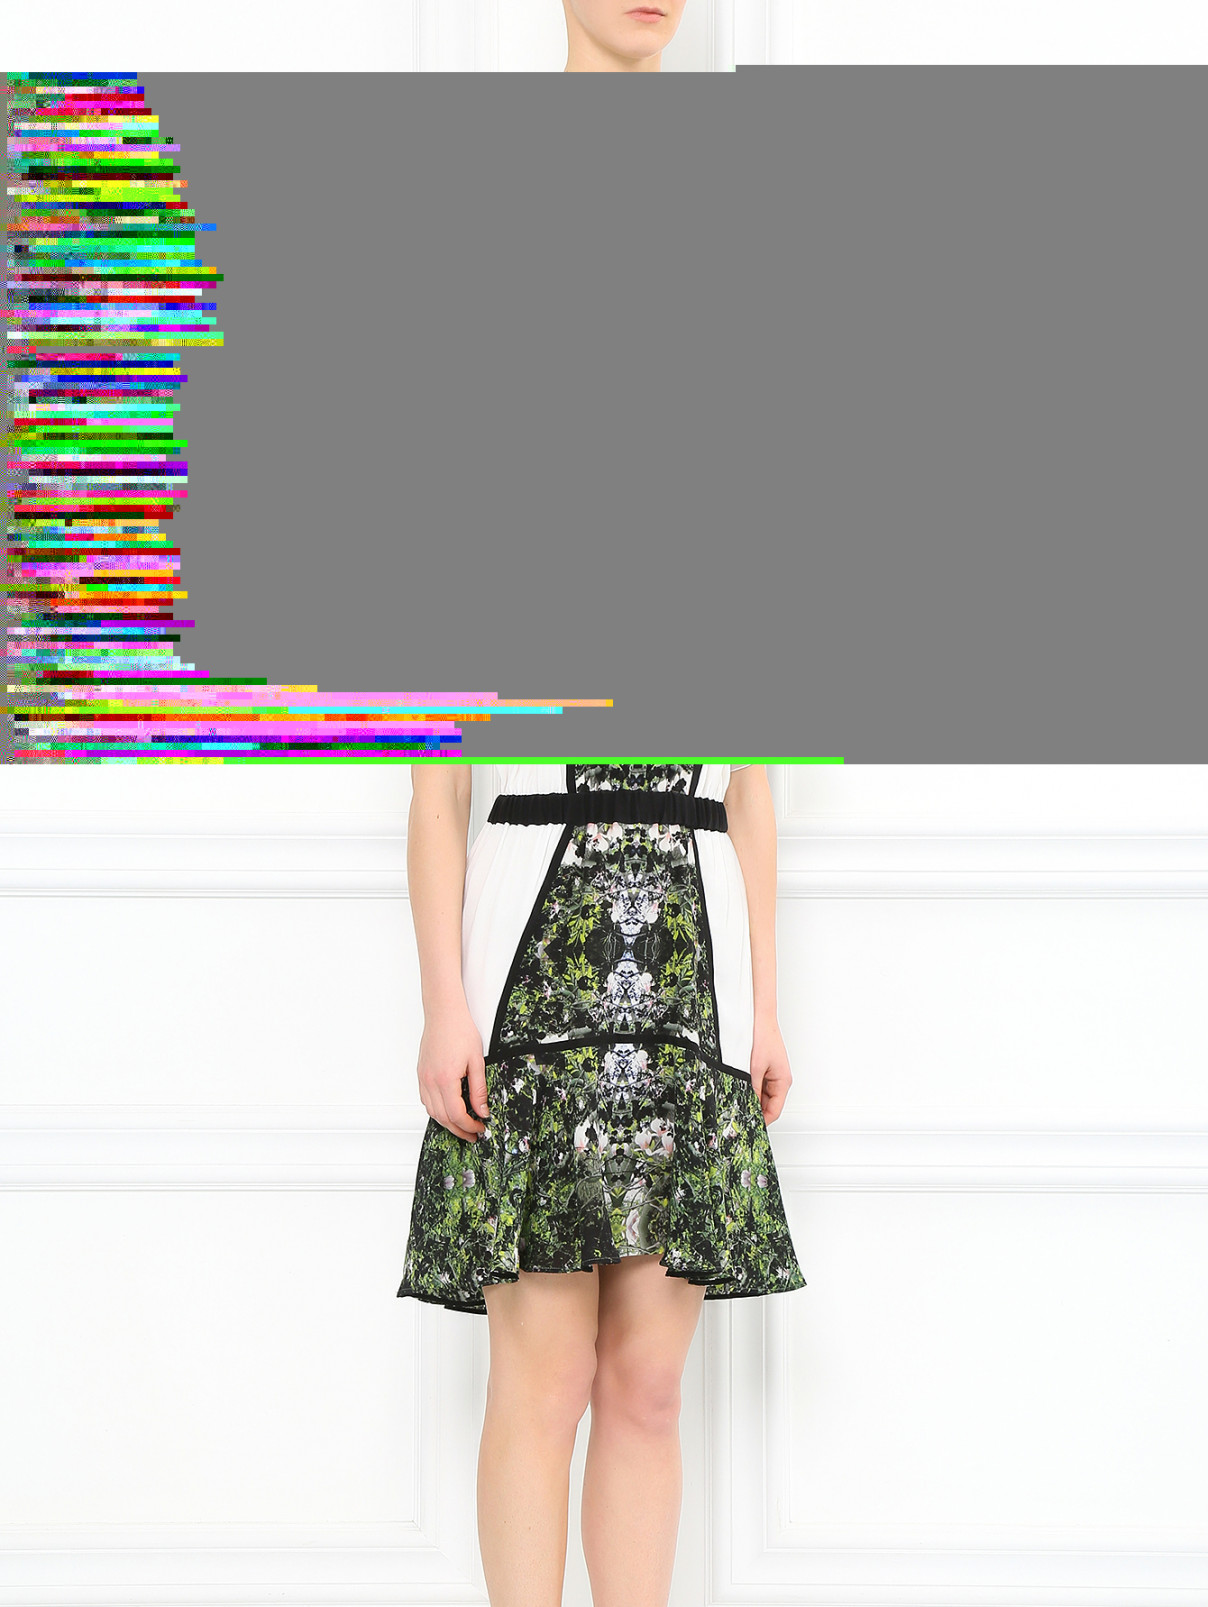 Платье-мини из шелка с узором Kira Plastinina  –  Модель Общий вид  – Цвет:  Зеленый